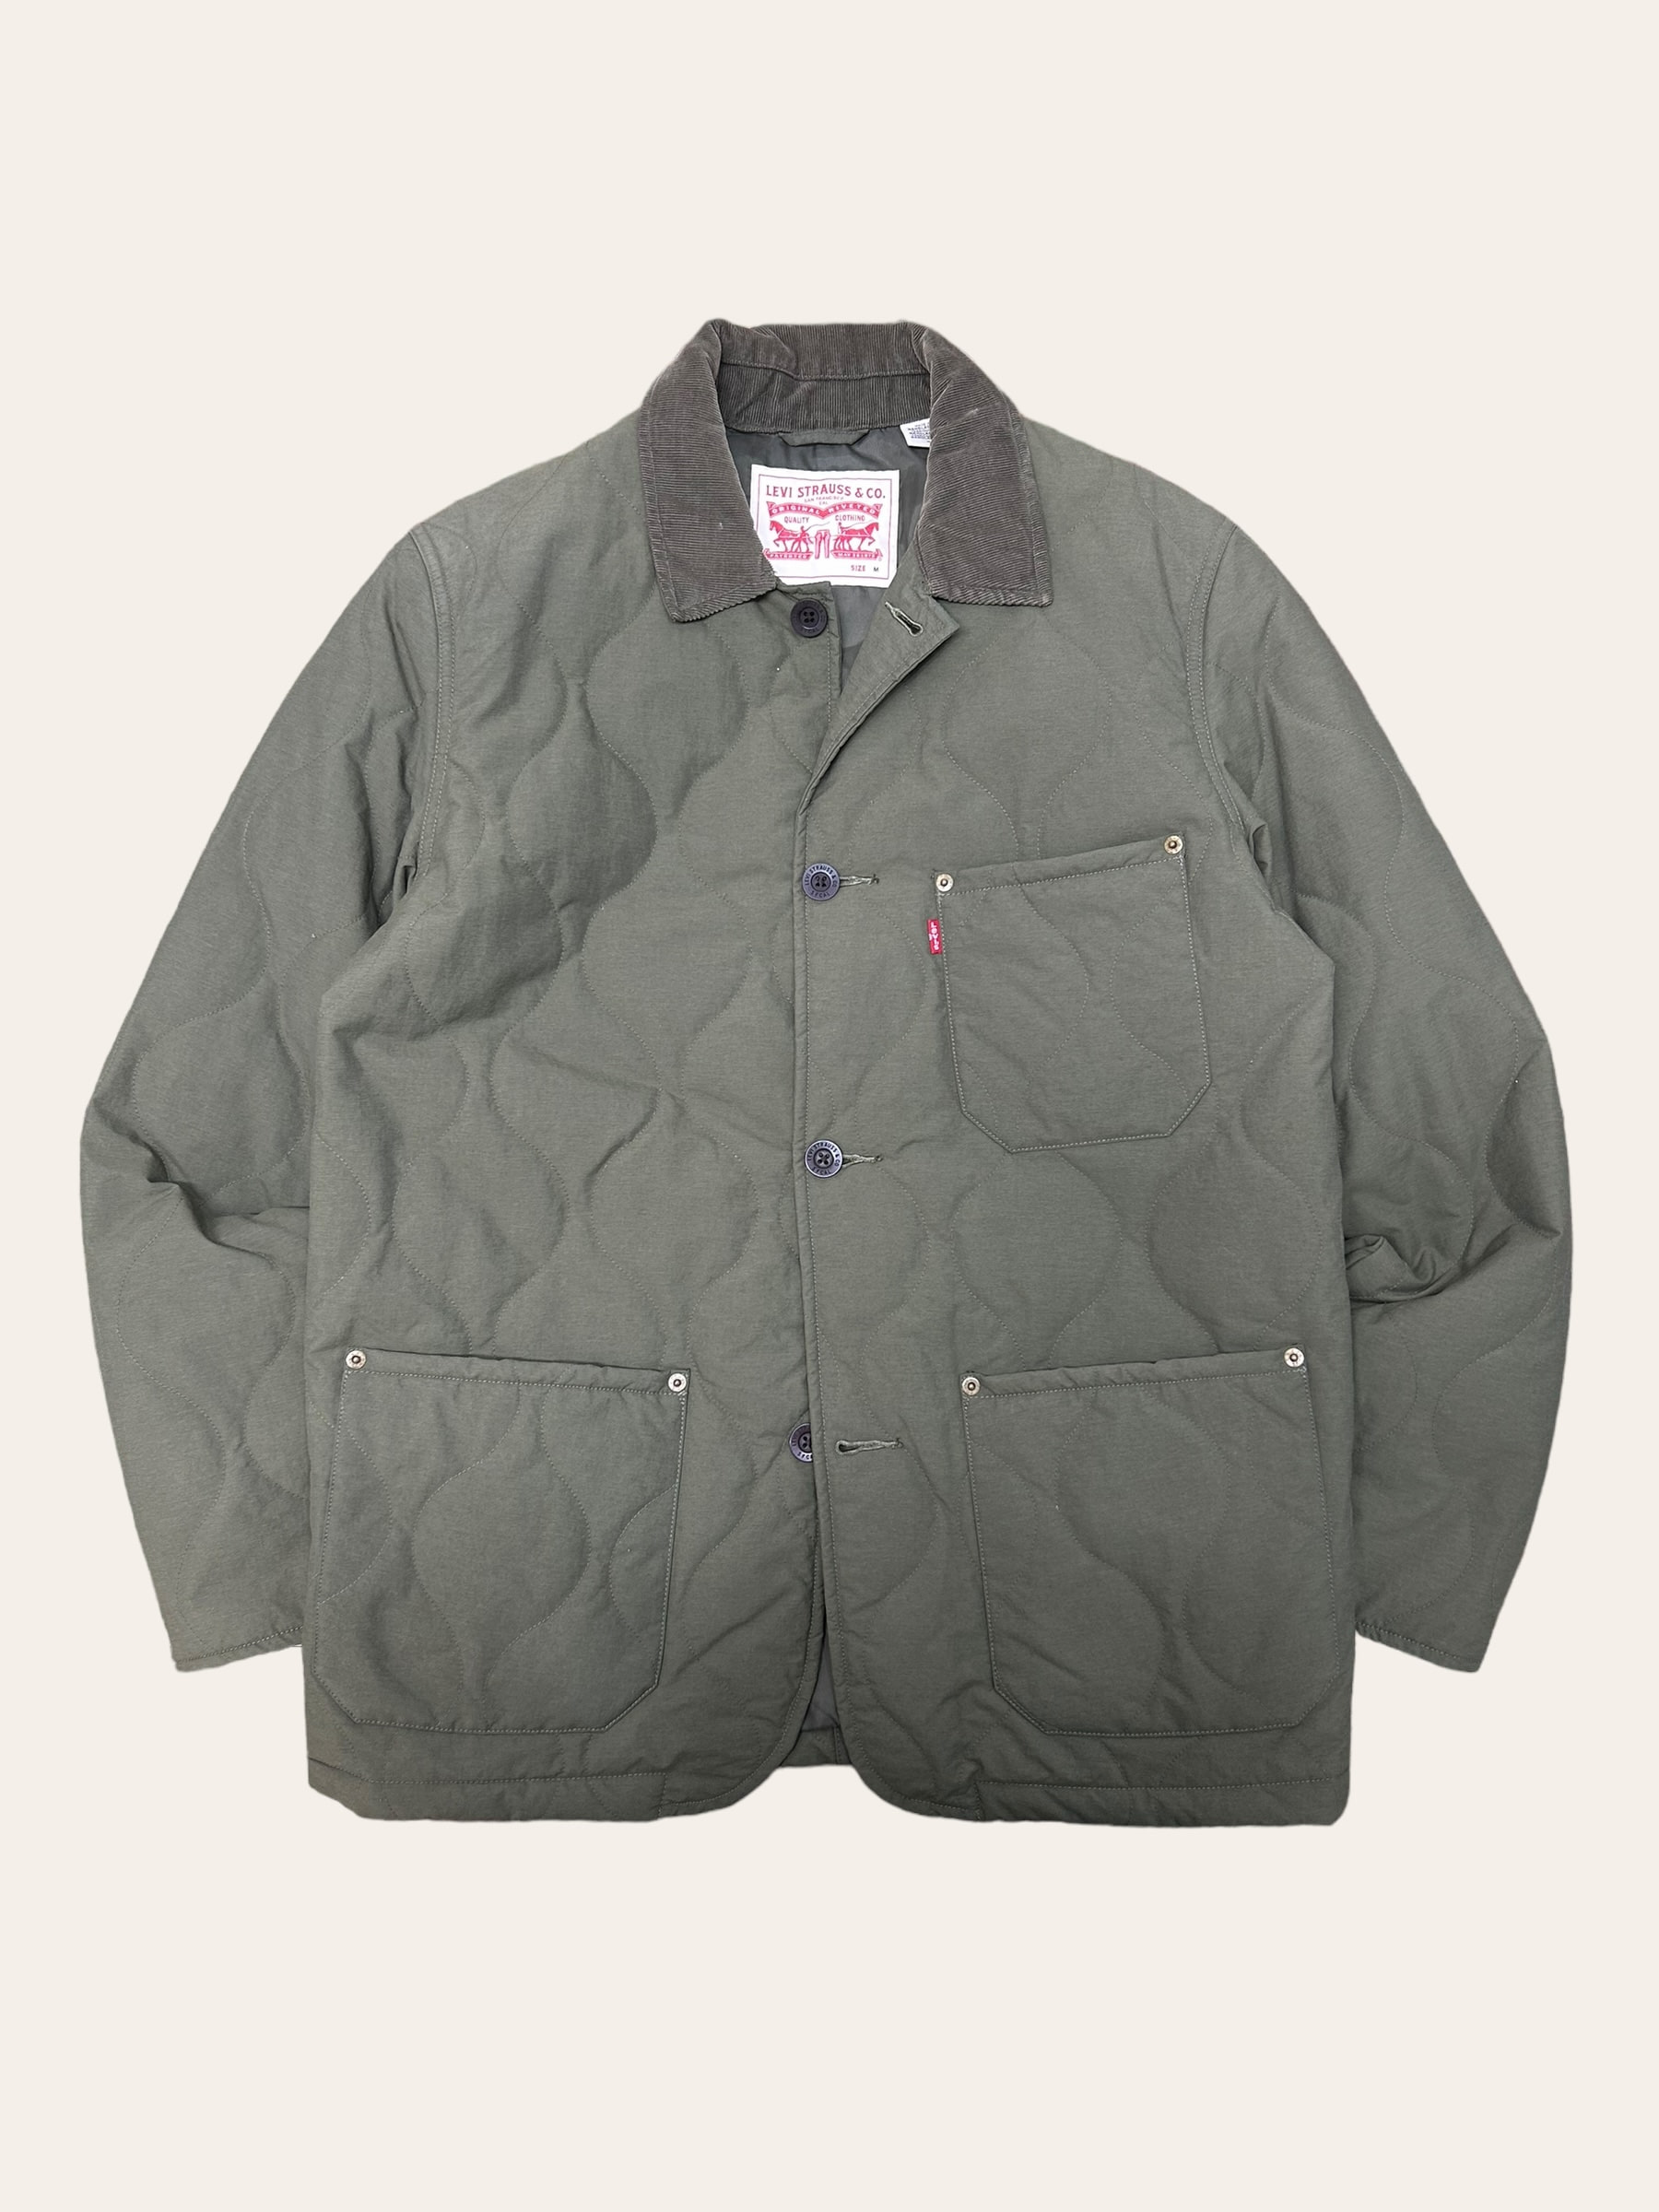 Levis khaki color quilted chore jacket M